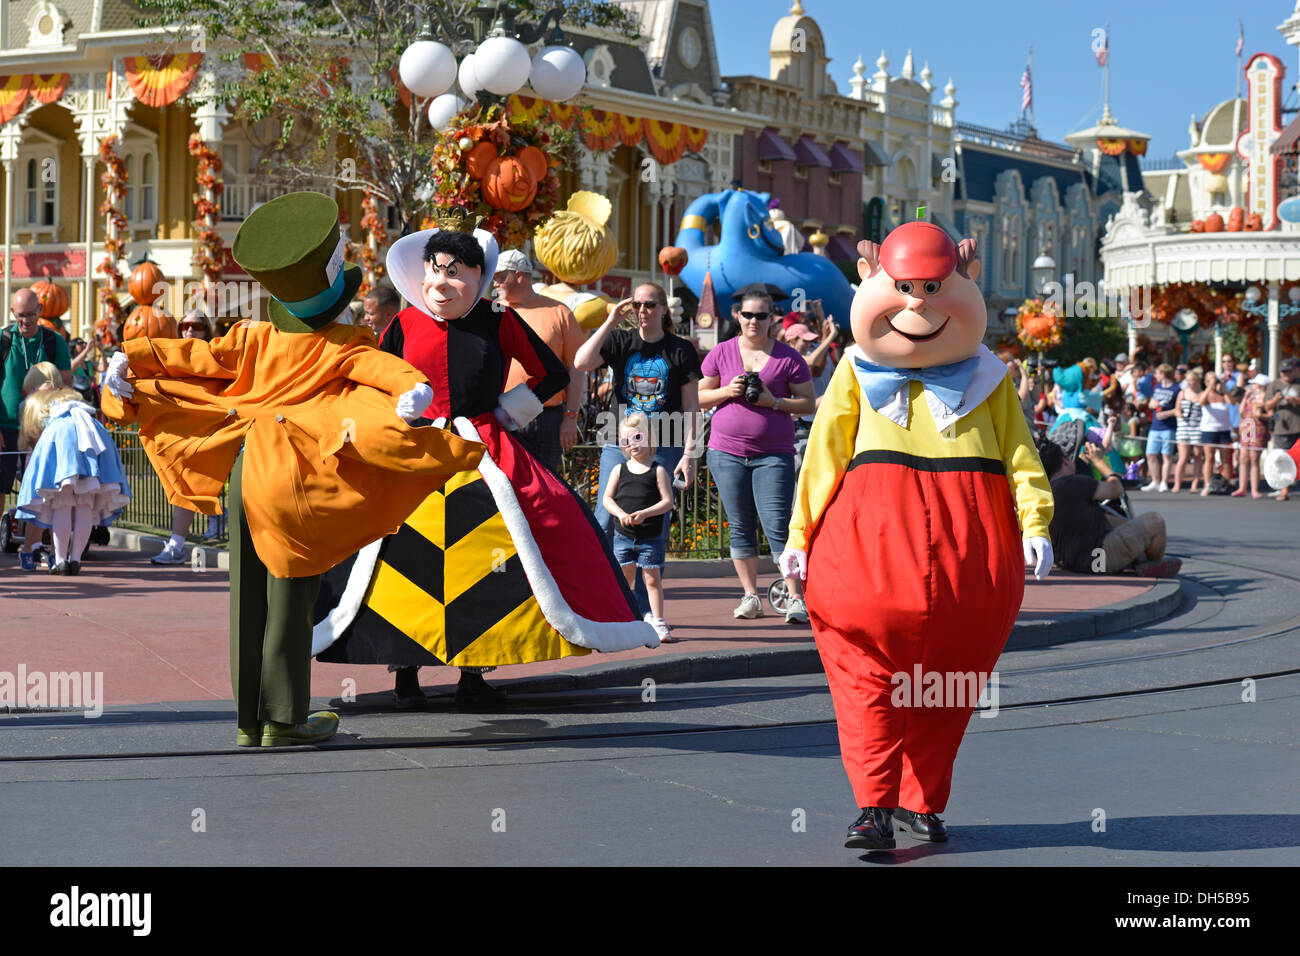 Disney Charaktere Tweedle Dee und Tweedle Dum, Mad Hatter, Königin der Herzen bei Parade in Magic Kingdom, Disney World in Florida Stockfoto